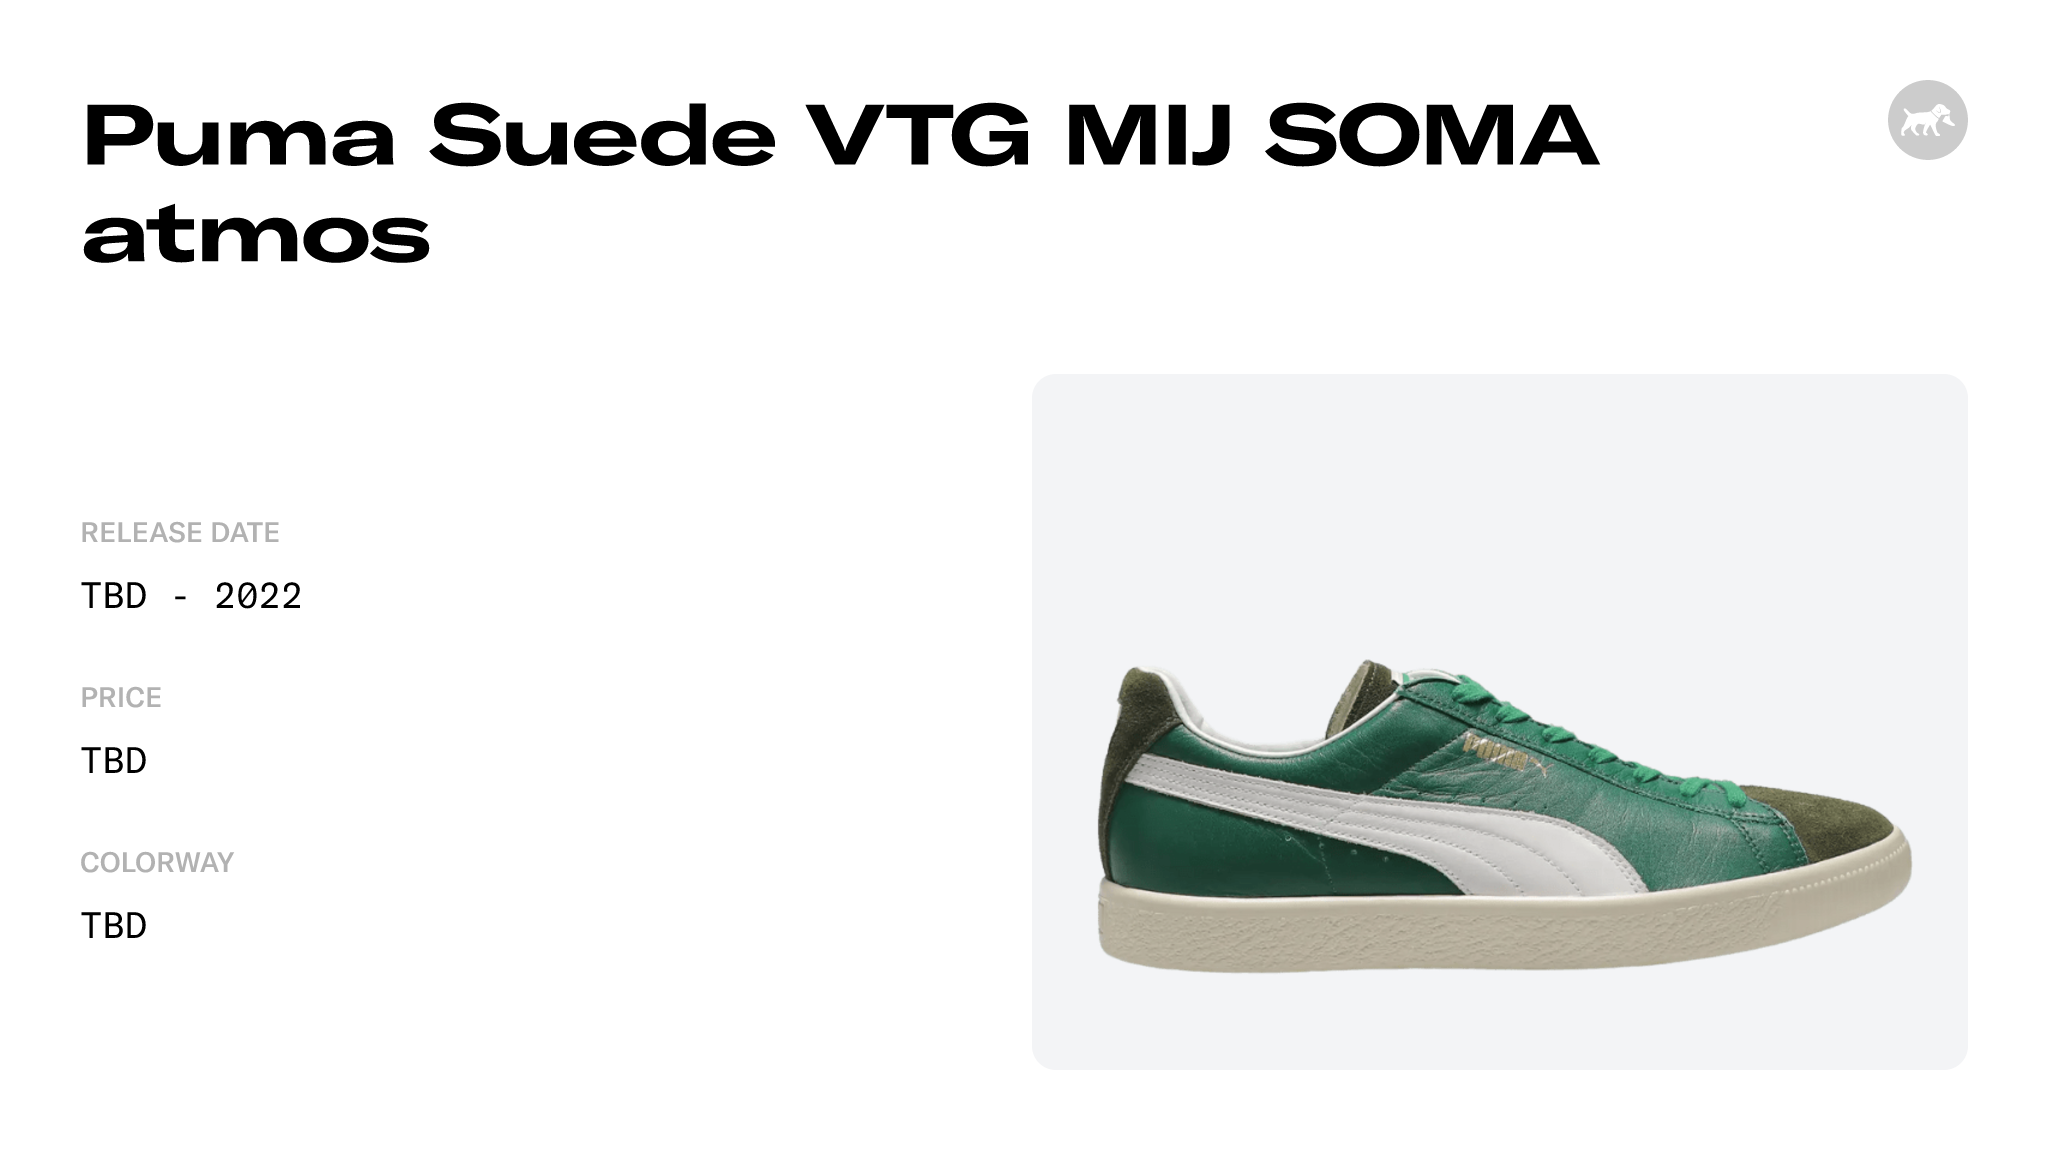 Puma Suede VTG MIJ SOMA atmos - 394682-01 Raffles and Release Date